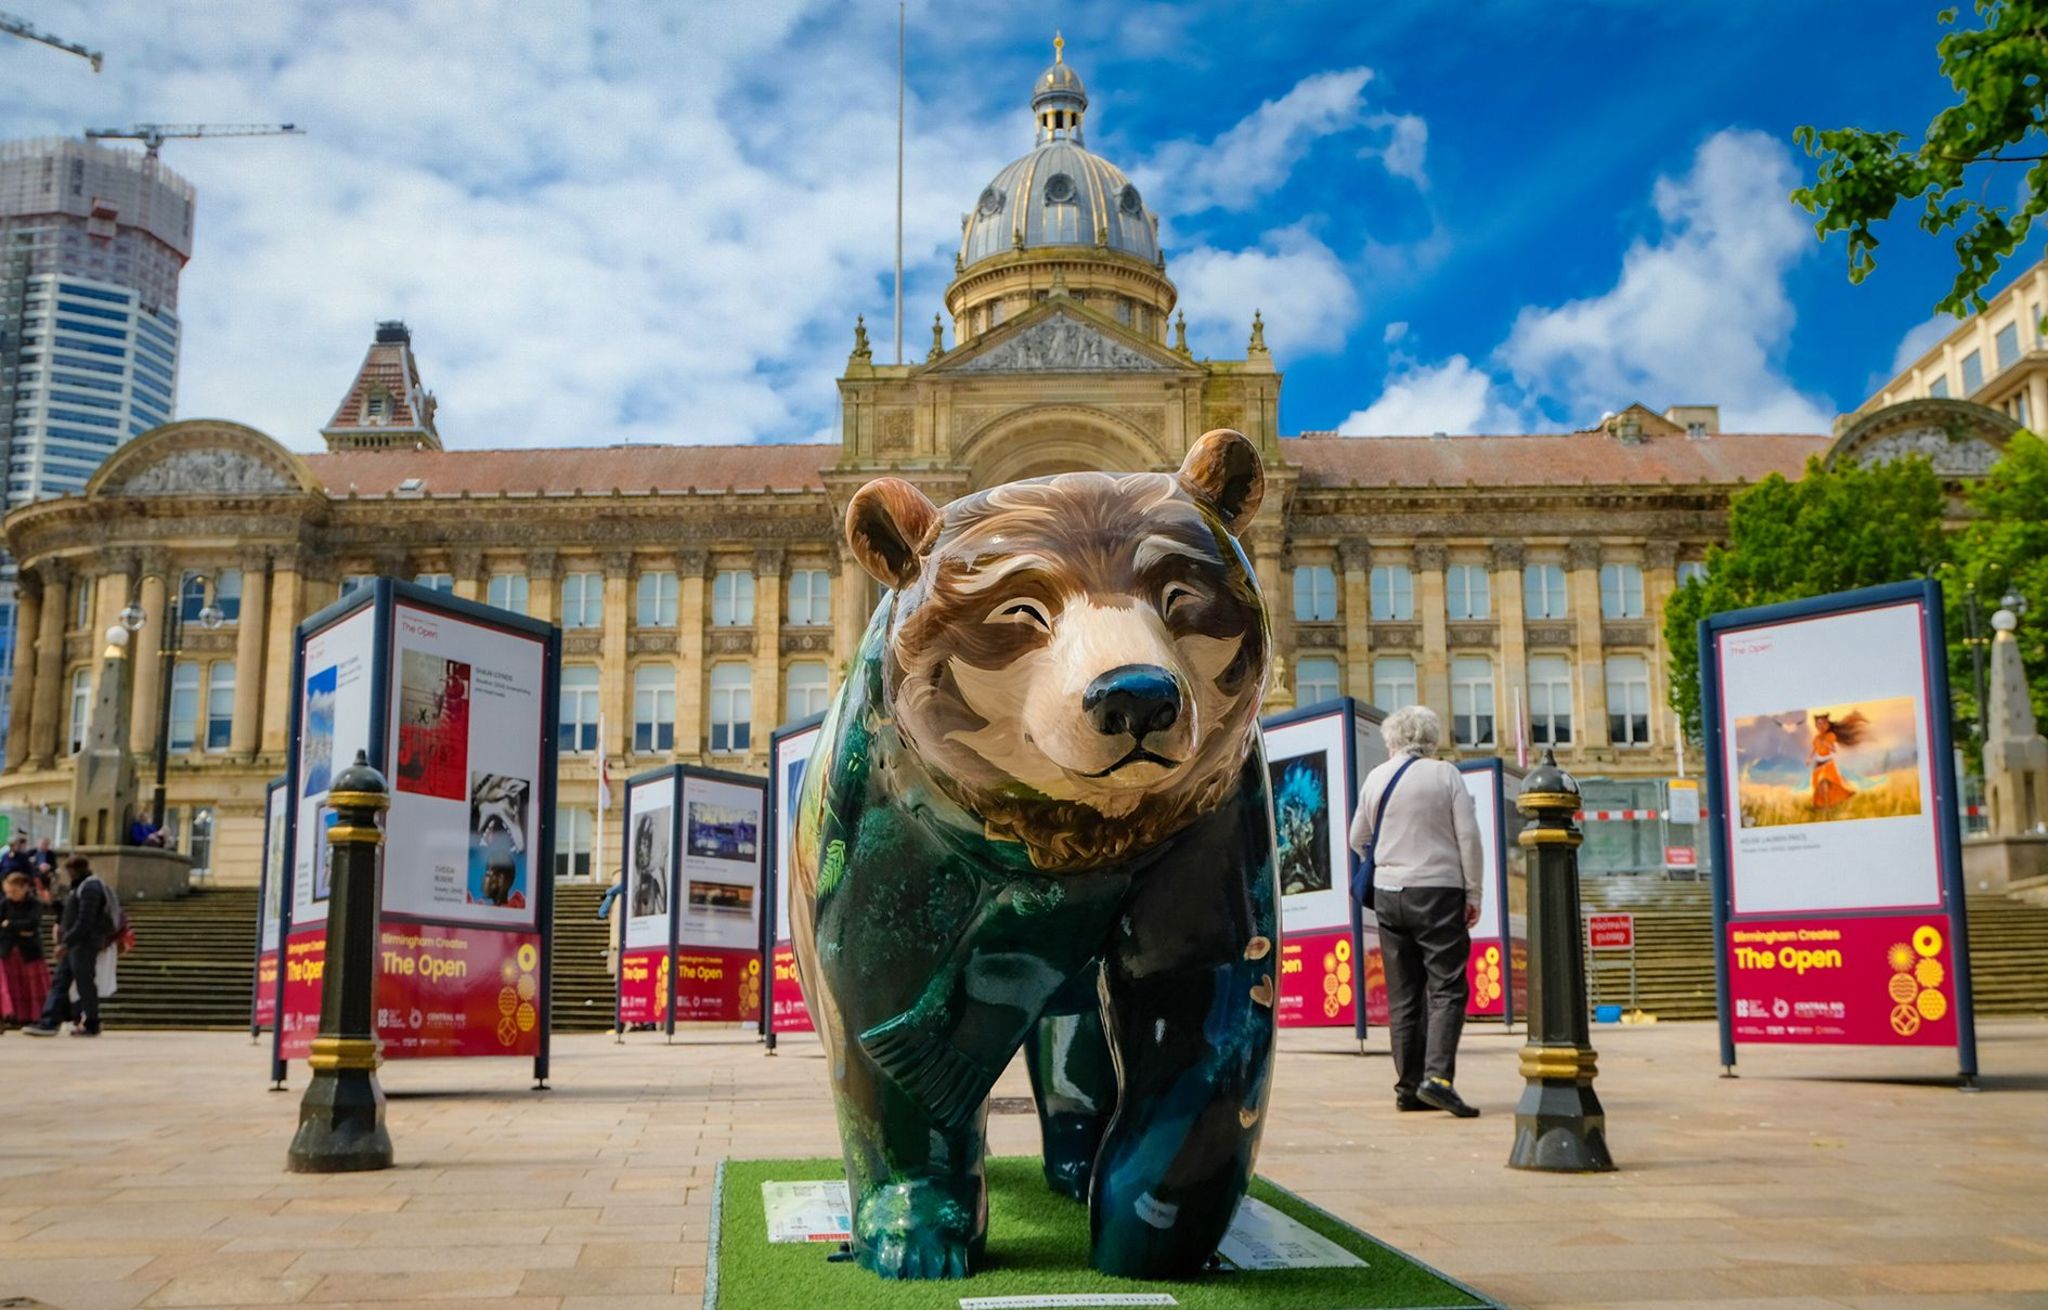 Bear statue in Victoria Square